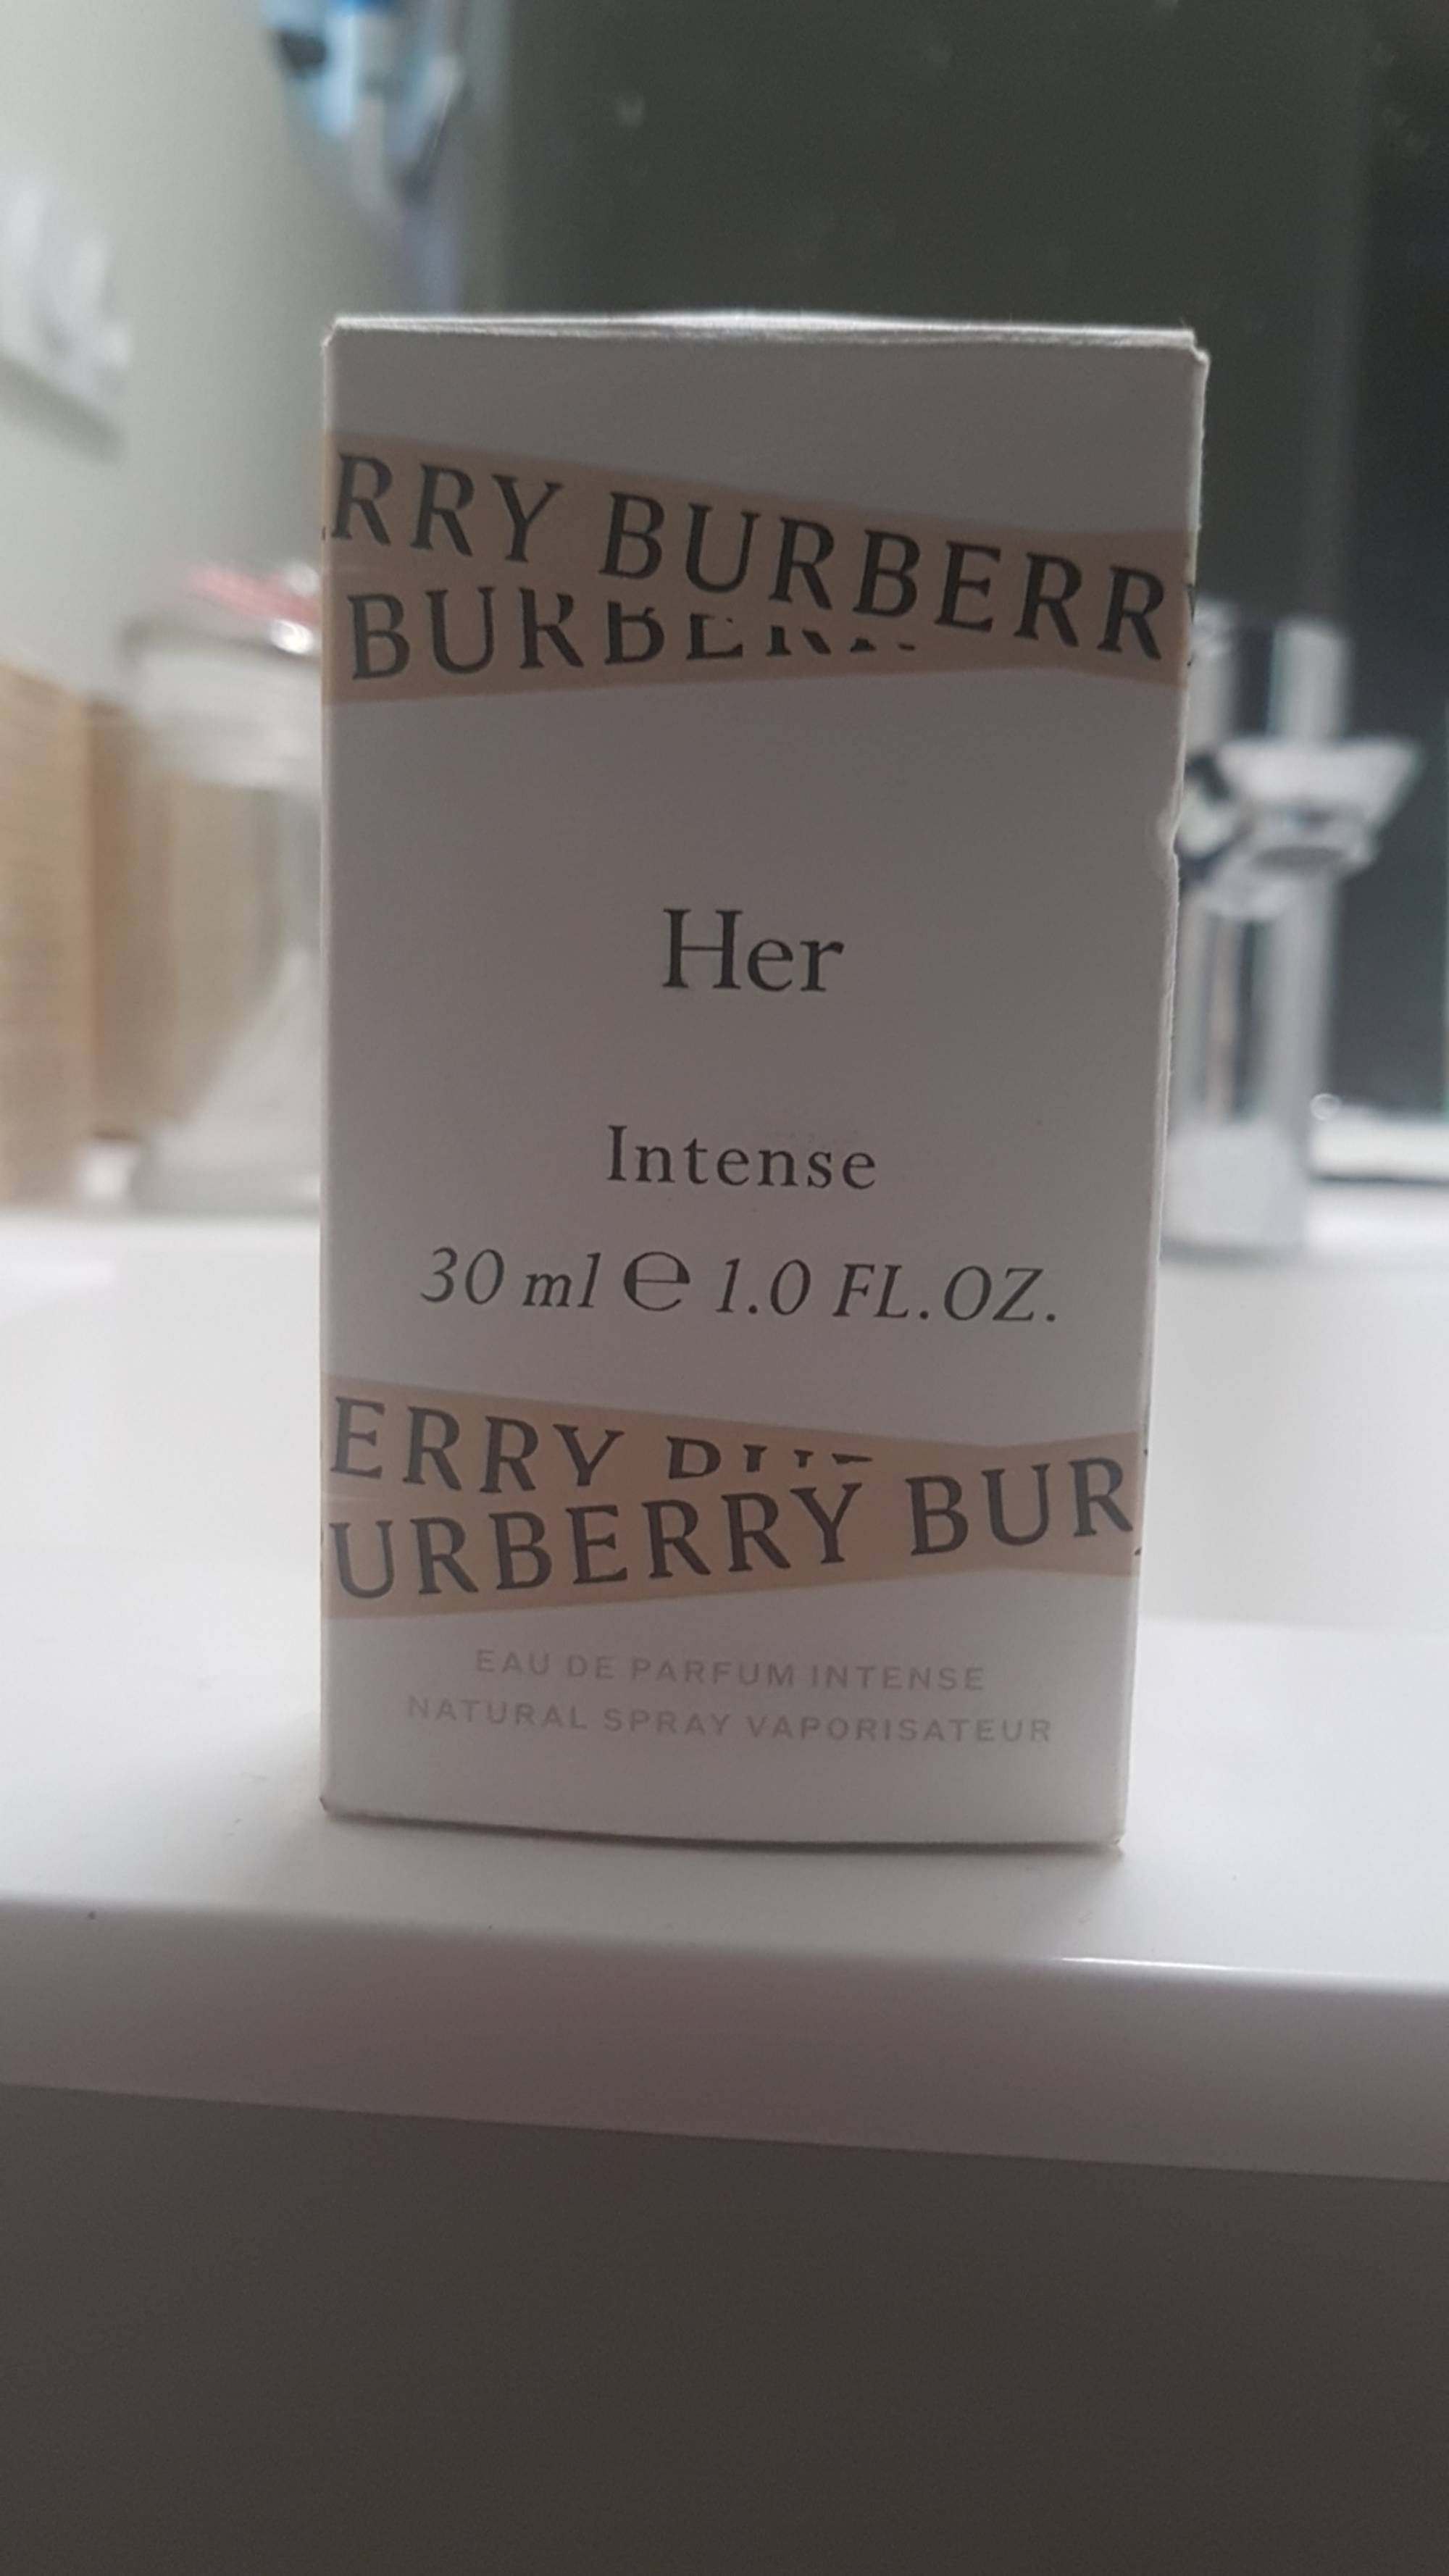 BURBERRY - Her intense - Eau de parfum intense